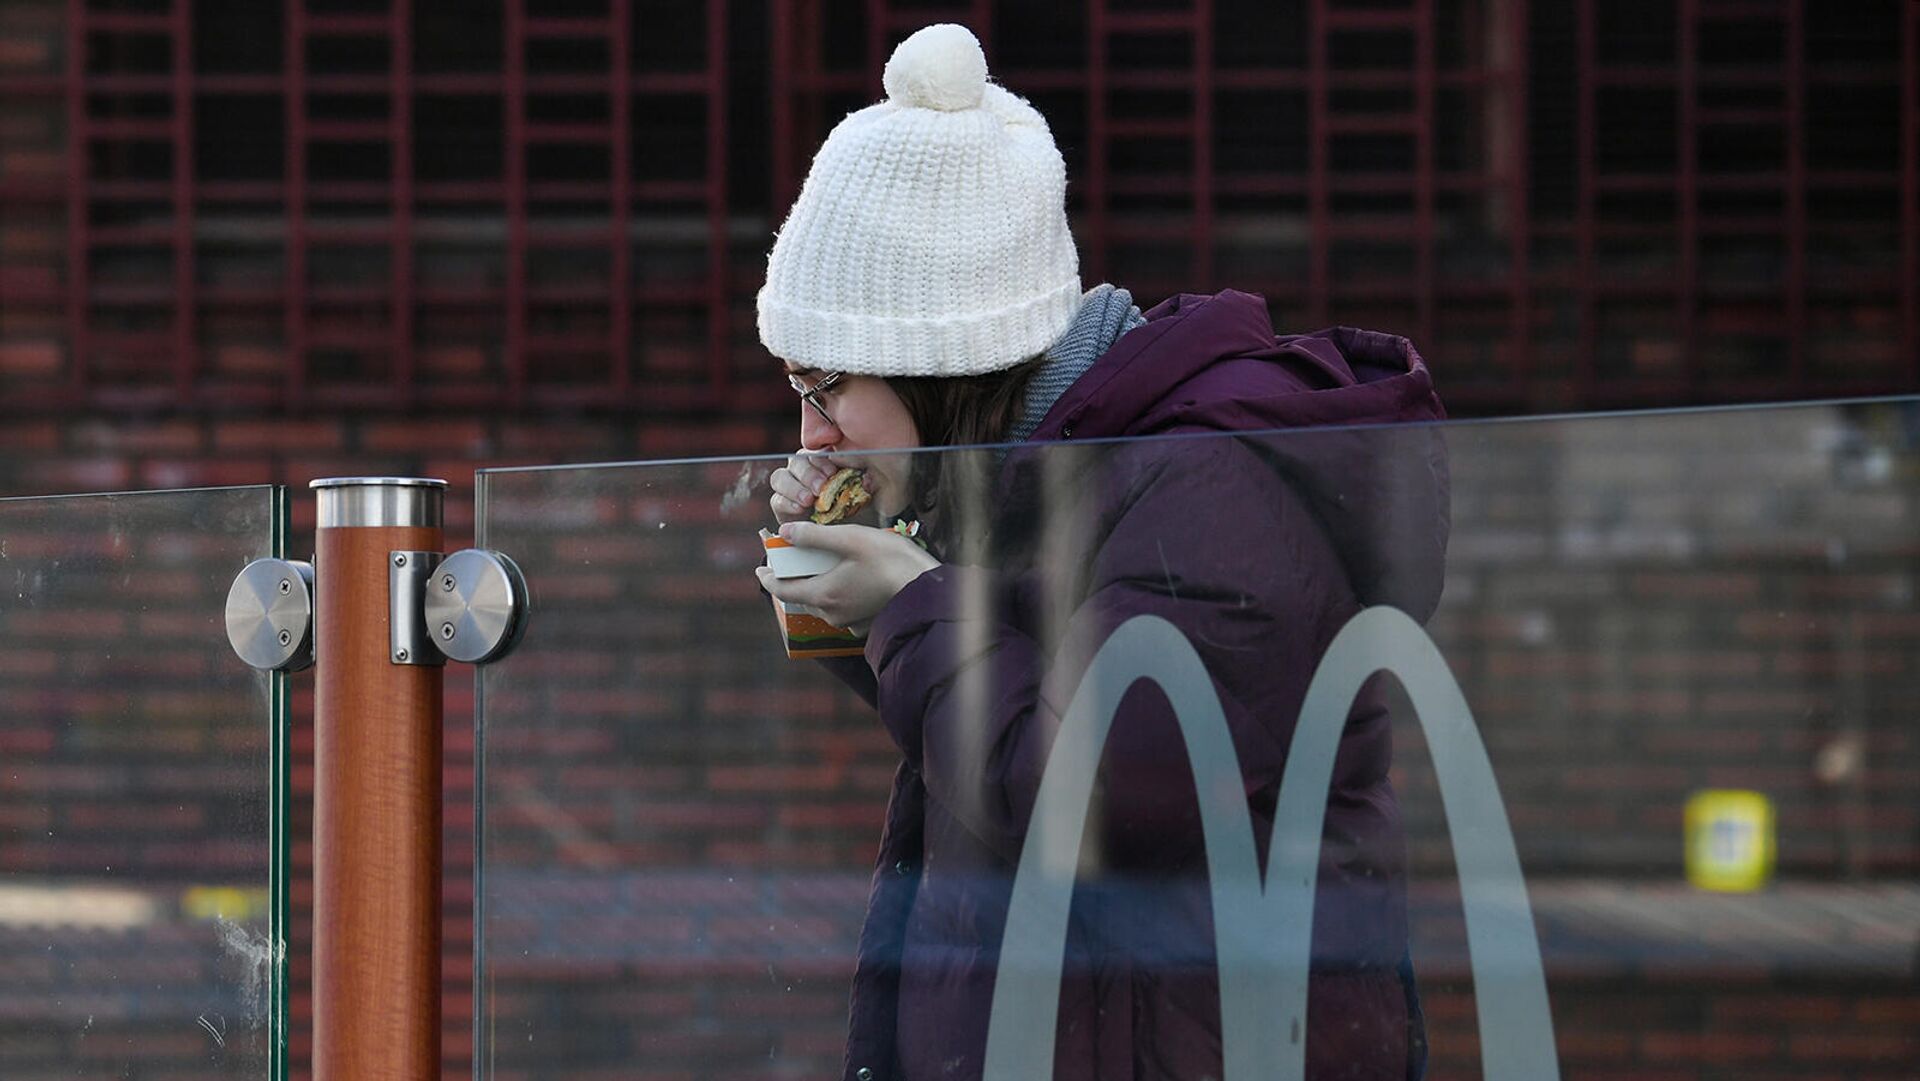 Աղջիկը համբուրգեր է ուտում McDonald's ռեստորանի մոտ (մարտի 9, 2022). Մոսկվա։  - Sputnik Արմենիա, 1920, 19.05.2022